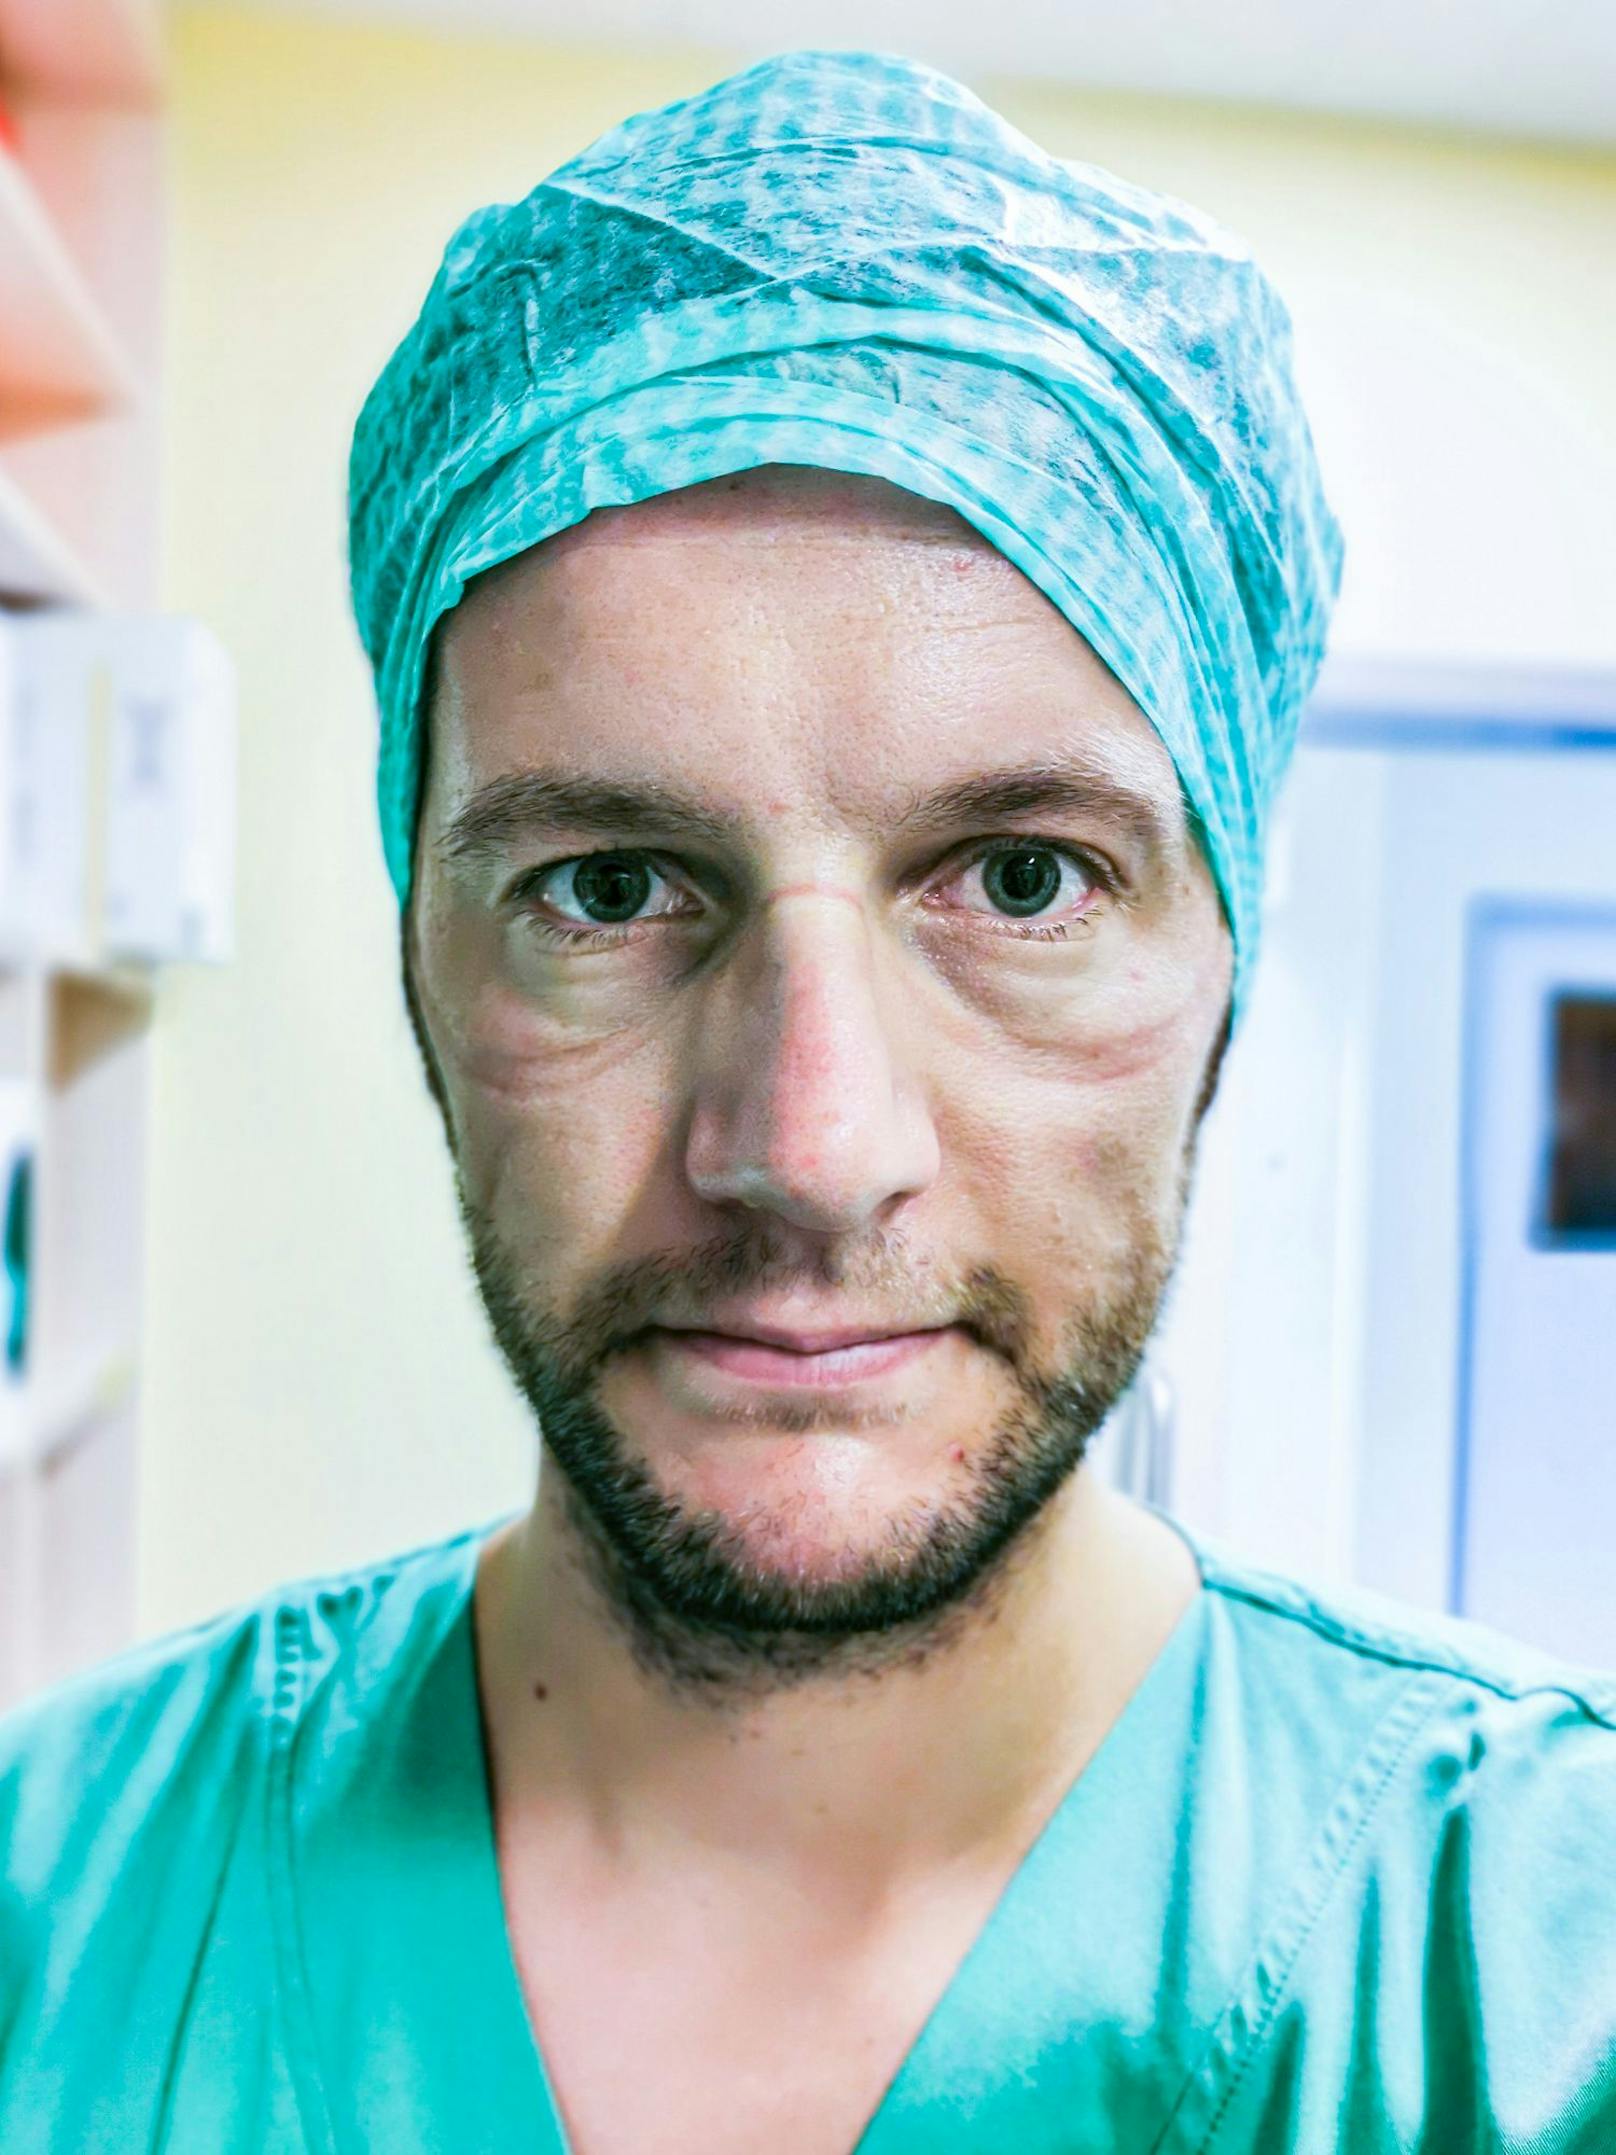 Das Gesundheitspersonal geht an seine Limits. Sie leisten "teils Übermenschliches", sagt Fotograf Günter Valda, der Selfies von Pflegern und Ärzten in der Pandemie sammelt.